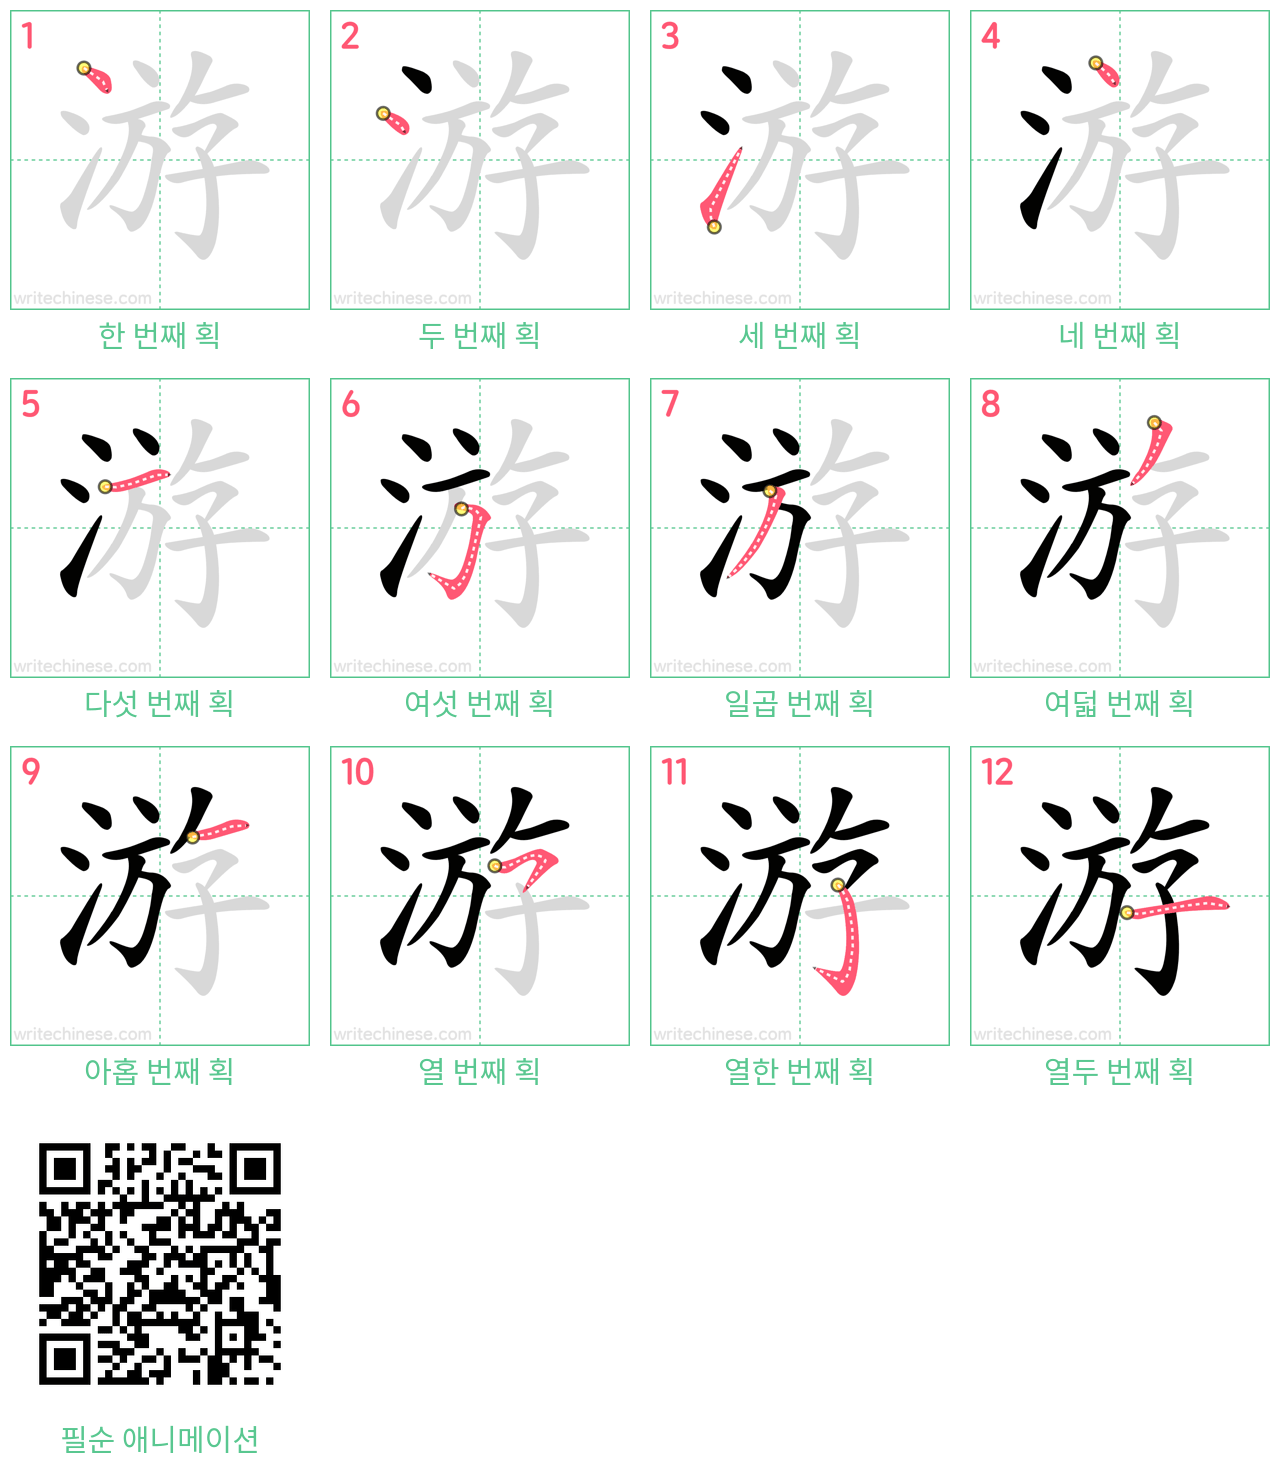 游 step-by-step stroke order diagrams